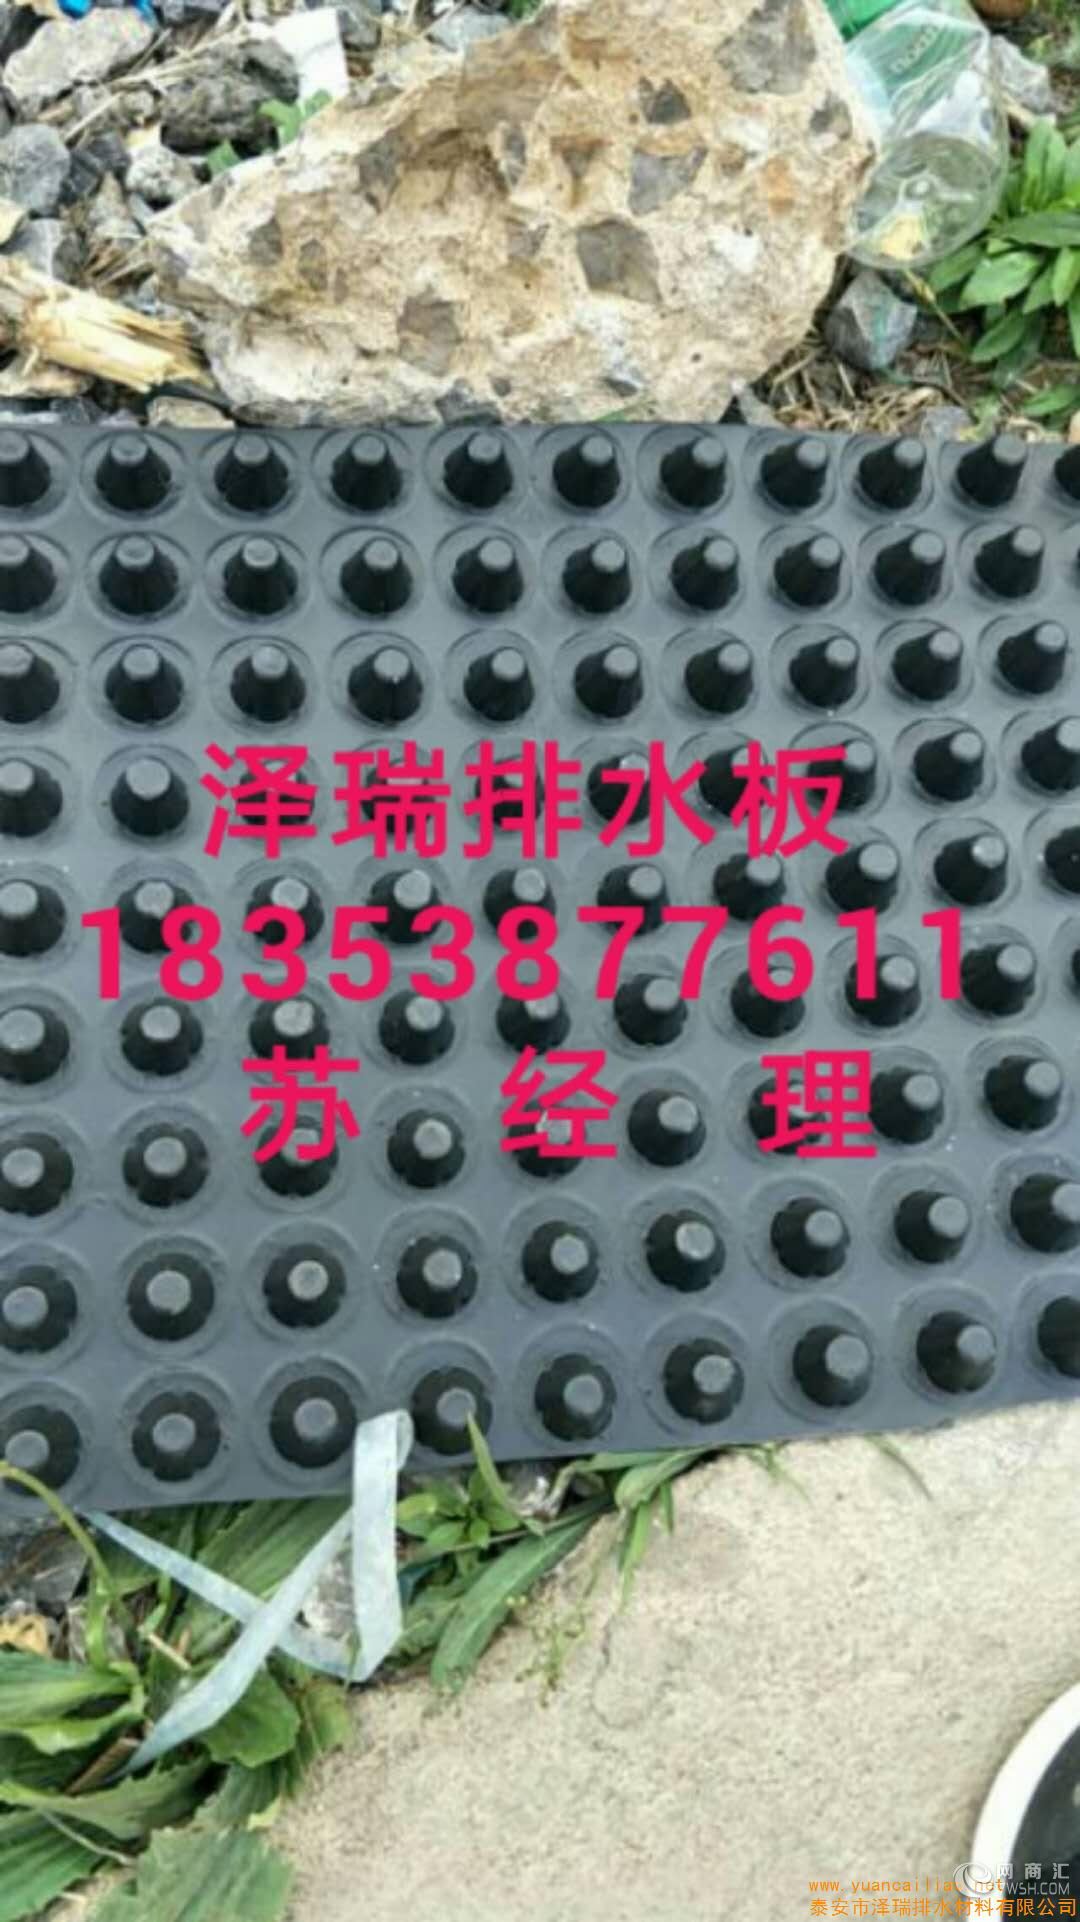 深圳%高抗压车库排水板√地下车库疏水板18353877611